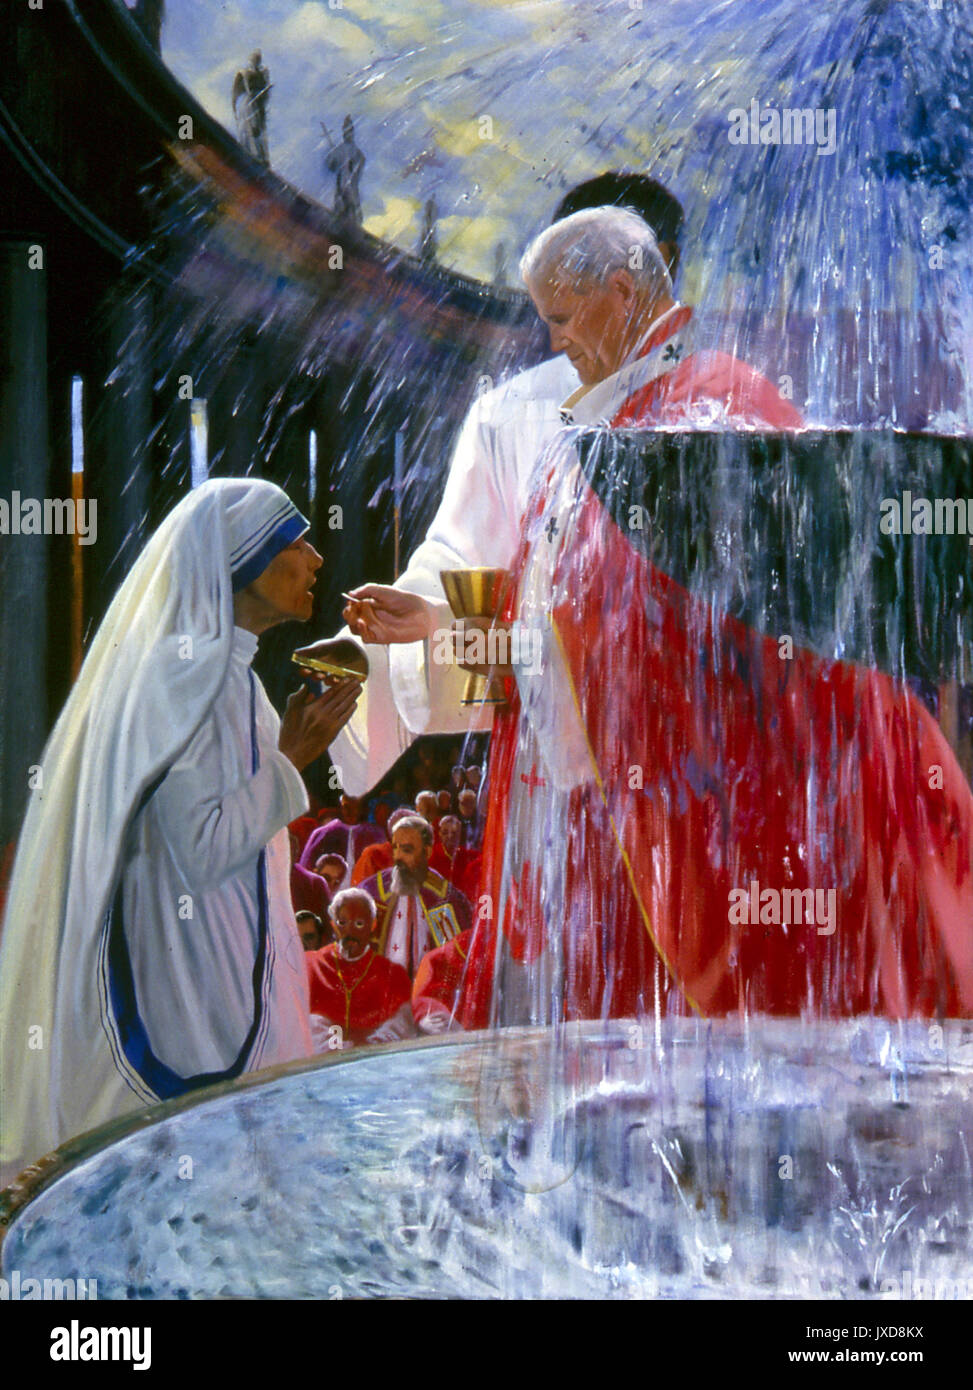 Mutter Theresa, die dieses Sakrament empfangen, von Johannes Paul II. an einer Messe 1982 in St. Peter's Square die große Plaza direkt vor der Basilika St. Peter im Vatikan. Stockfoto